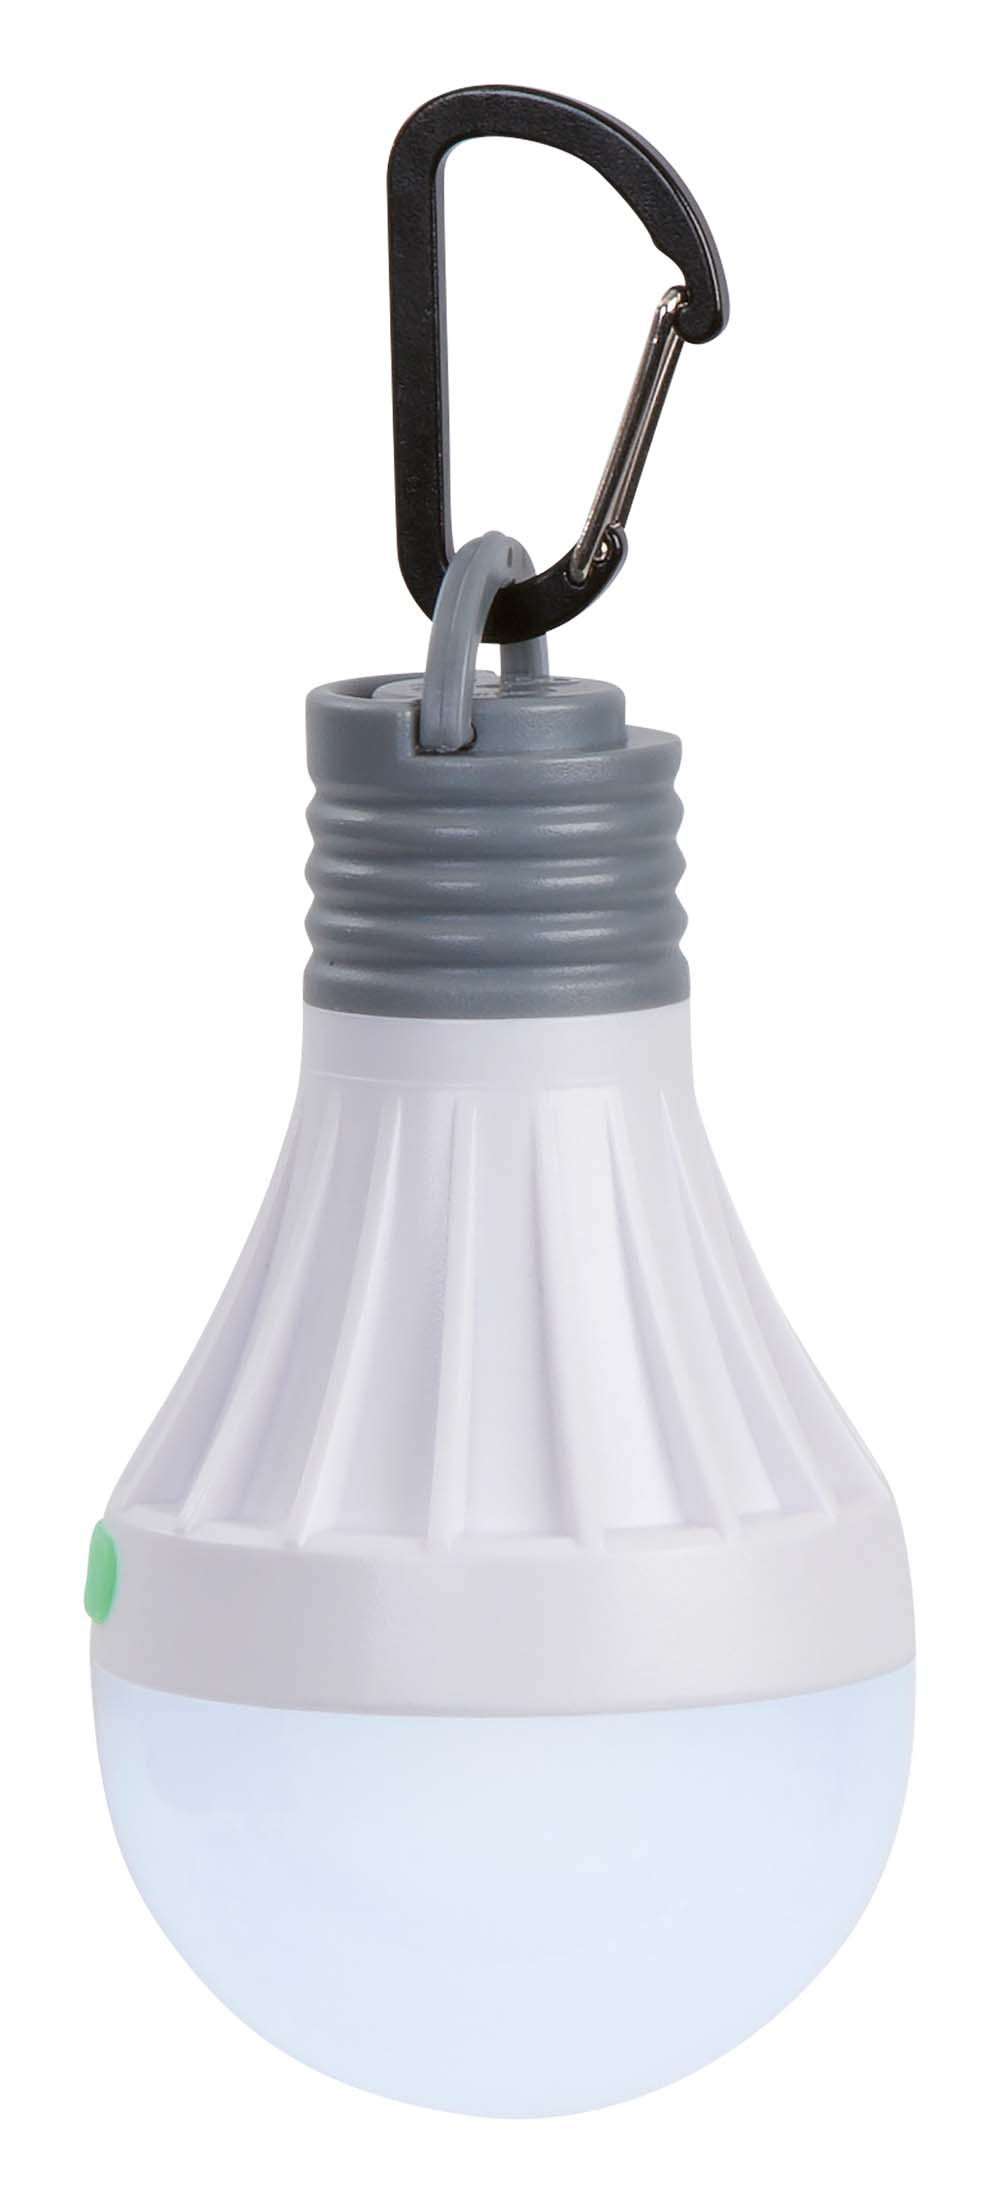 5818854 Una lámpara colgante en forma de globo. Esta lámpara colgante impermeable tiene un LED y se puede utilizar en 2 posiciones de luz. 50%, 100% y modo intermitente. La lámpara se puede colgar rápida y fácilmente mediante el mosquetón y también se puede fijar, por ejemplo, a una pared de hierro con un imán. Funciona con 1 pila AA (no incluida). Tiempo de combustión: 20-8 horas Salida de luz: 15-35 lúmenes